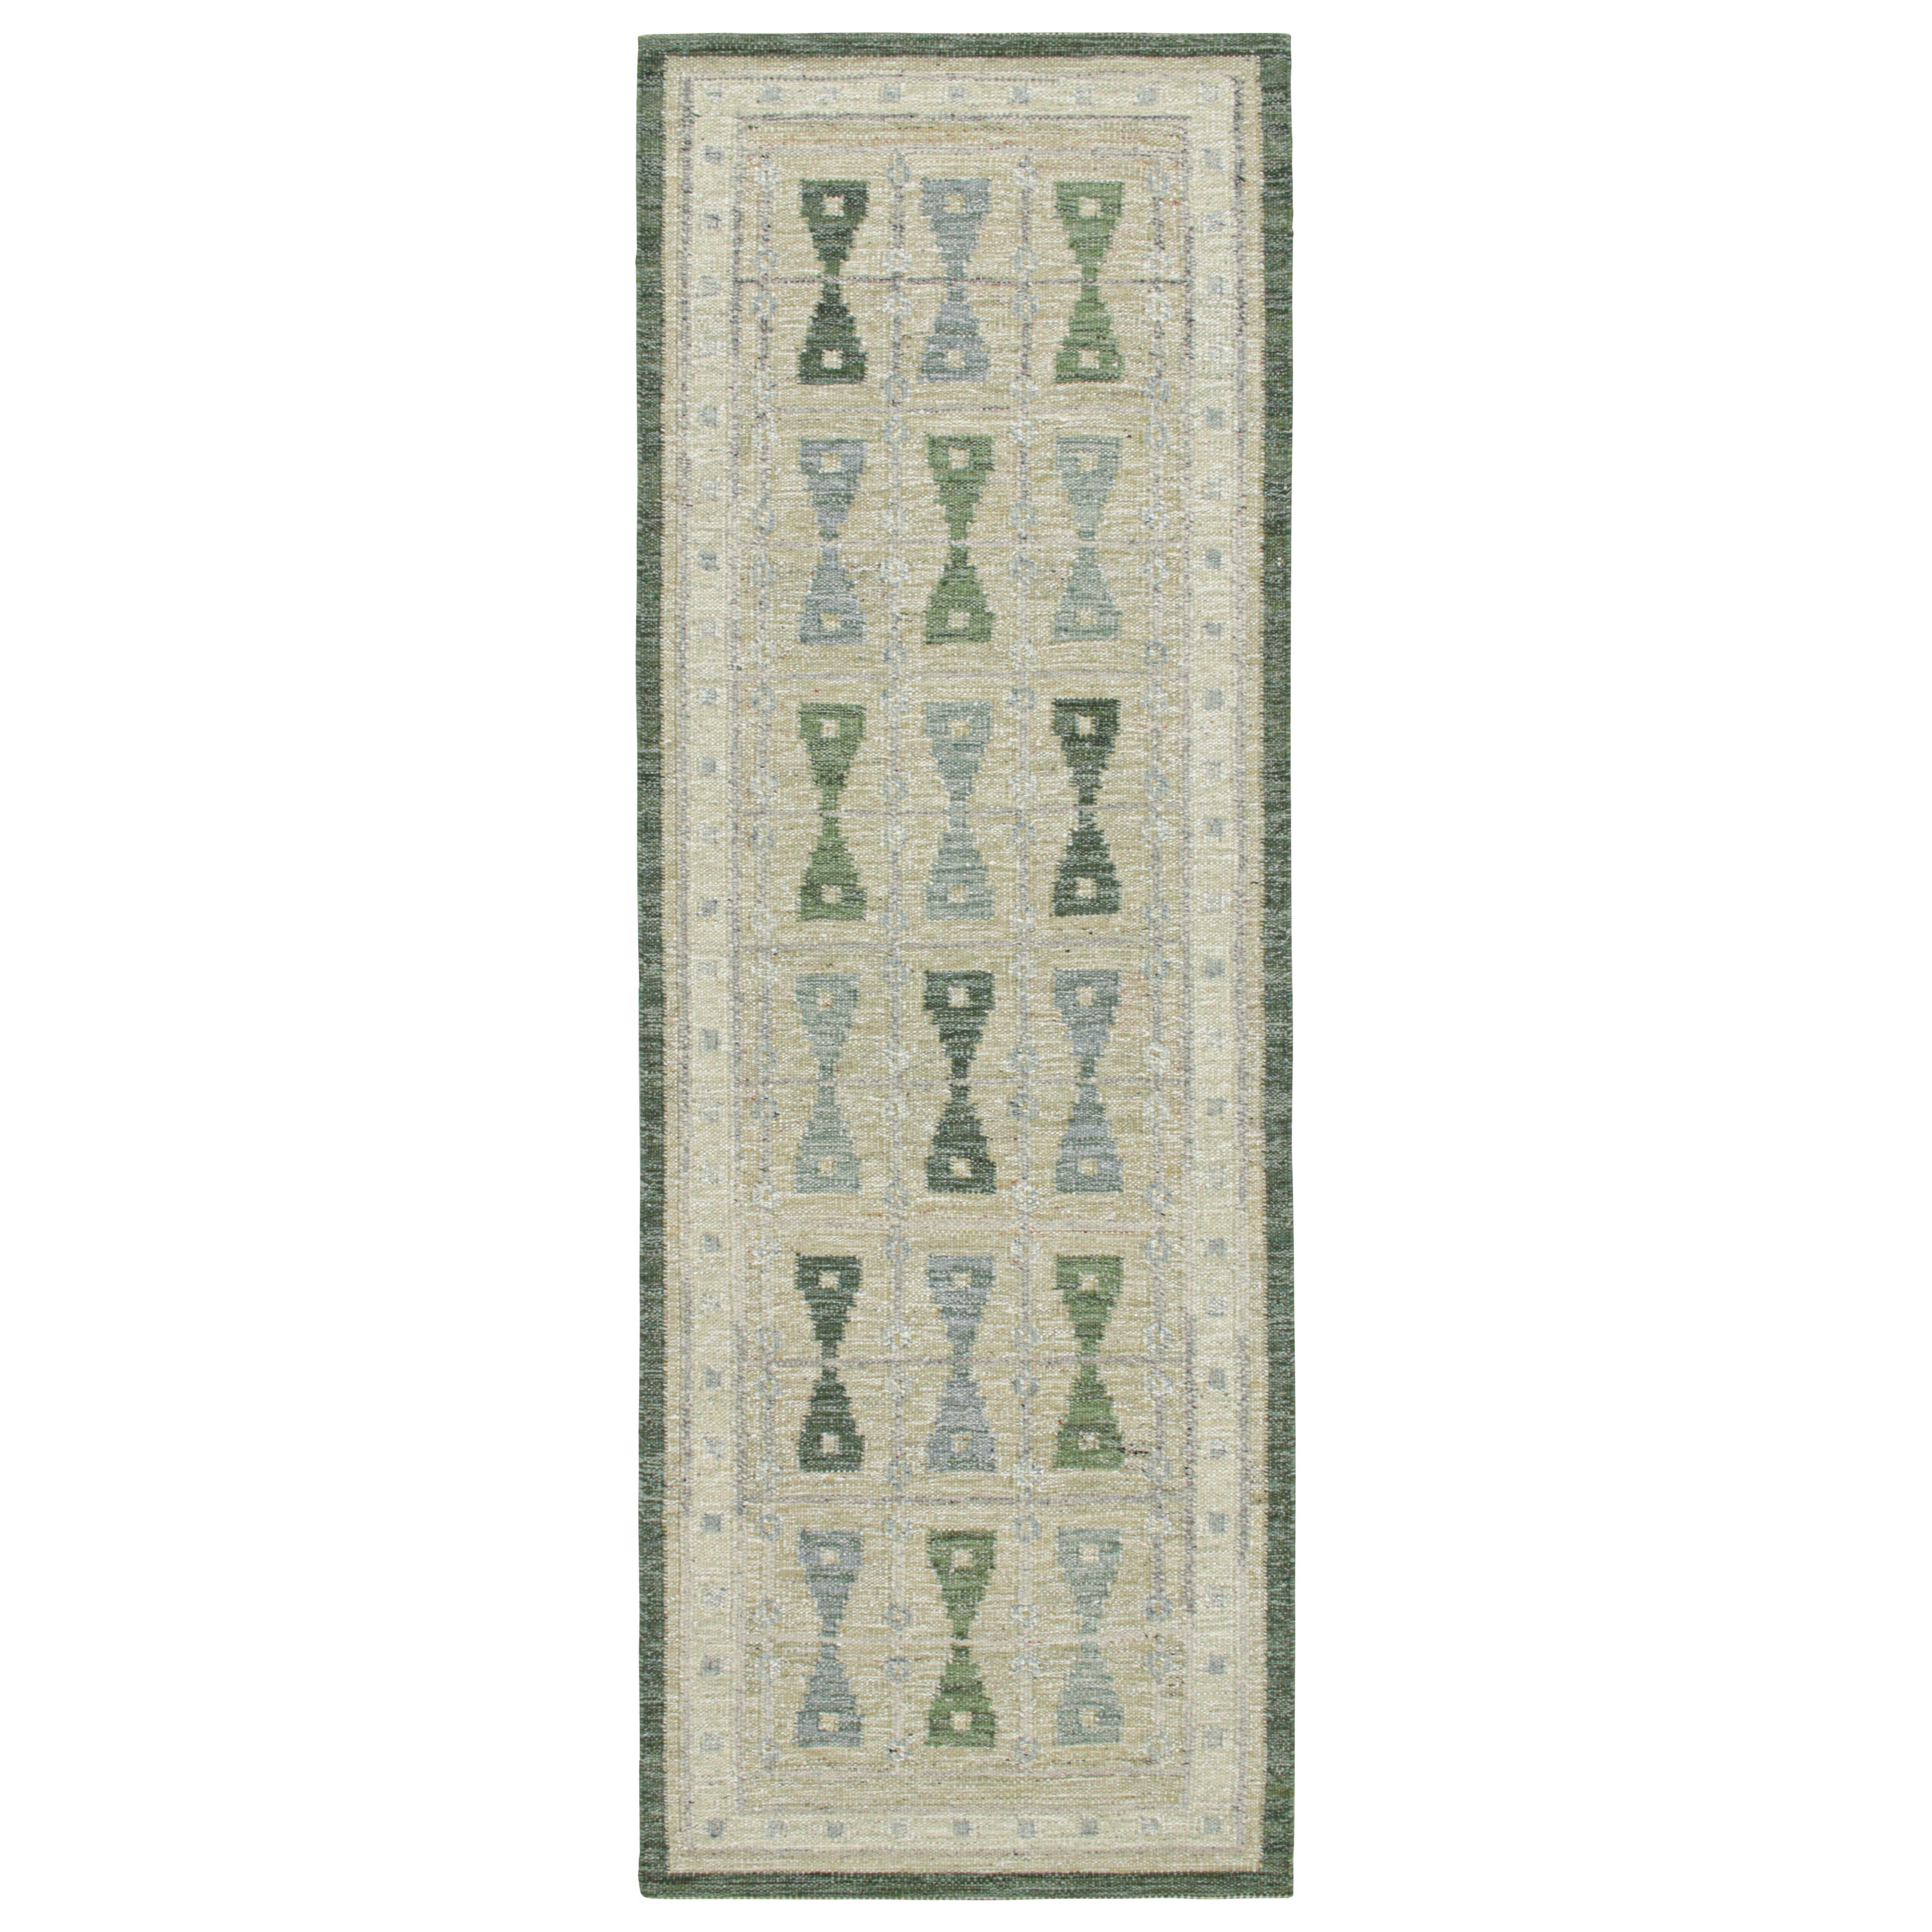 Tapis de style scandinave Kilim de Rug & Kilim en beige avec motifs géométriques